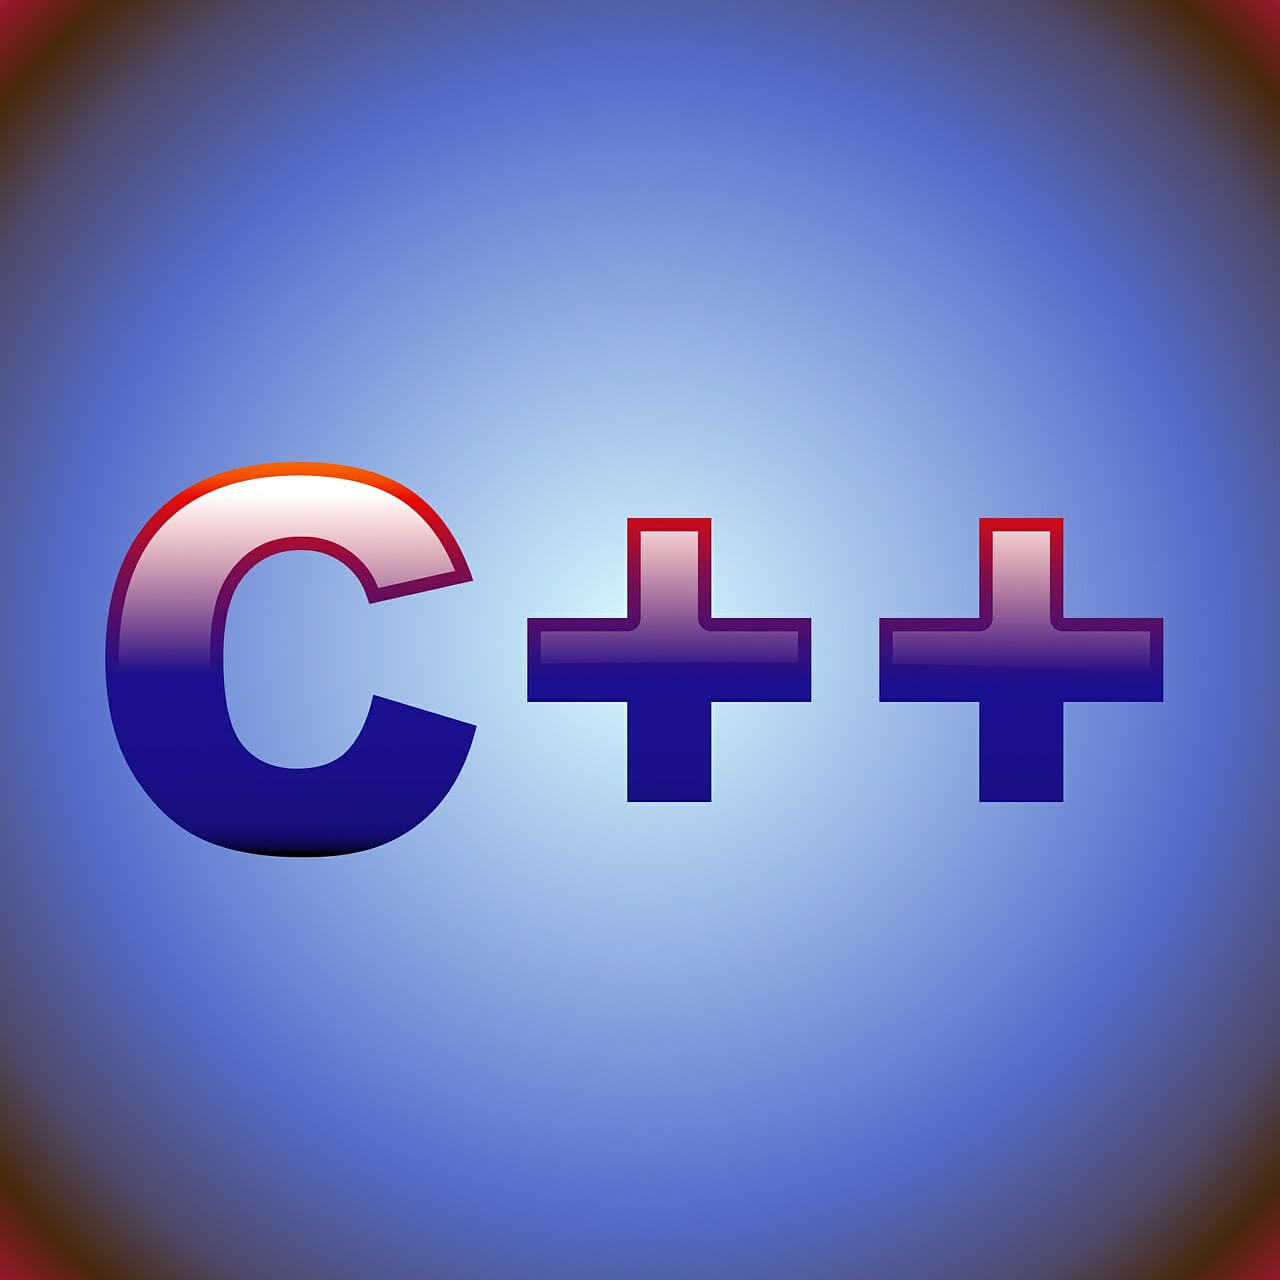 C++ Language